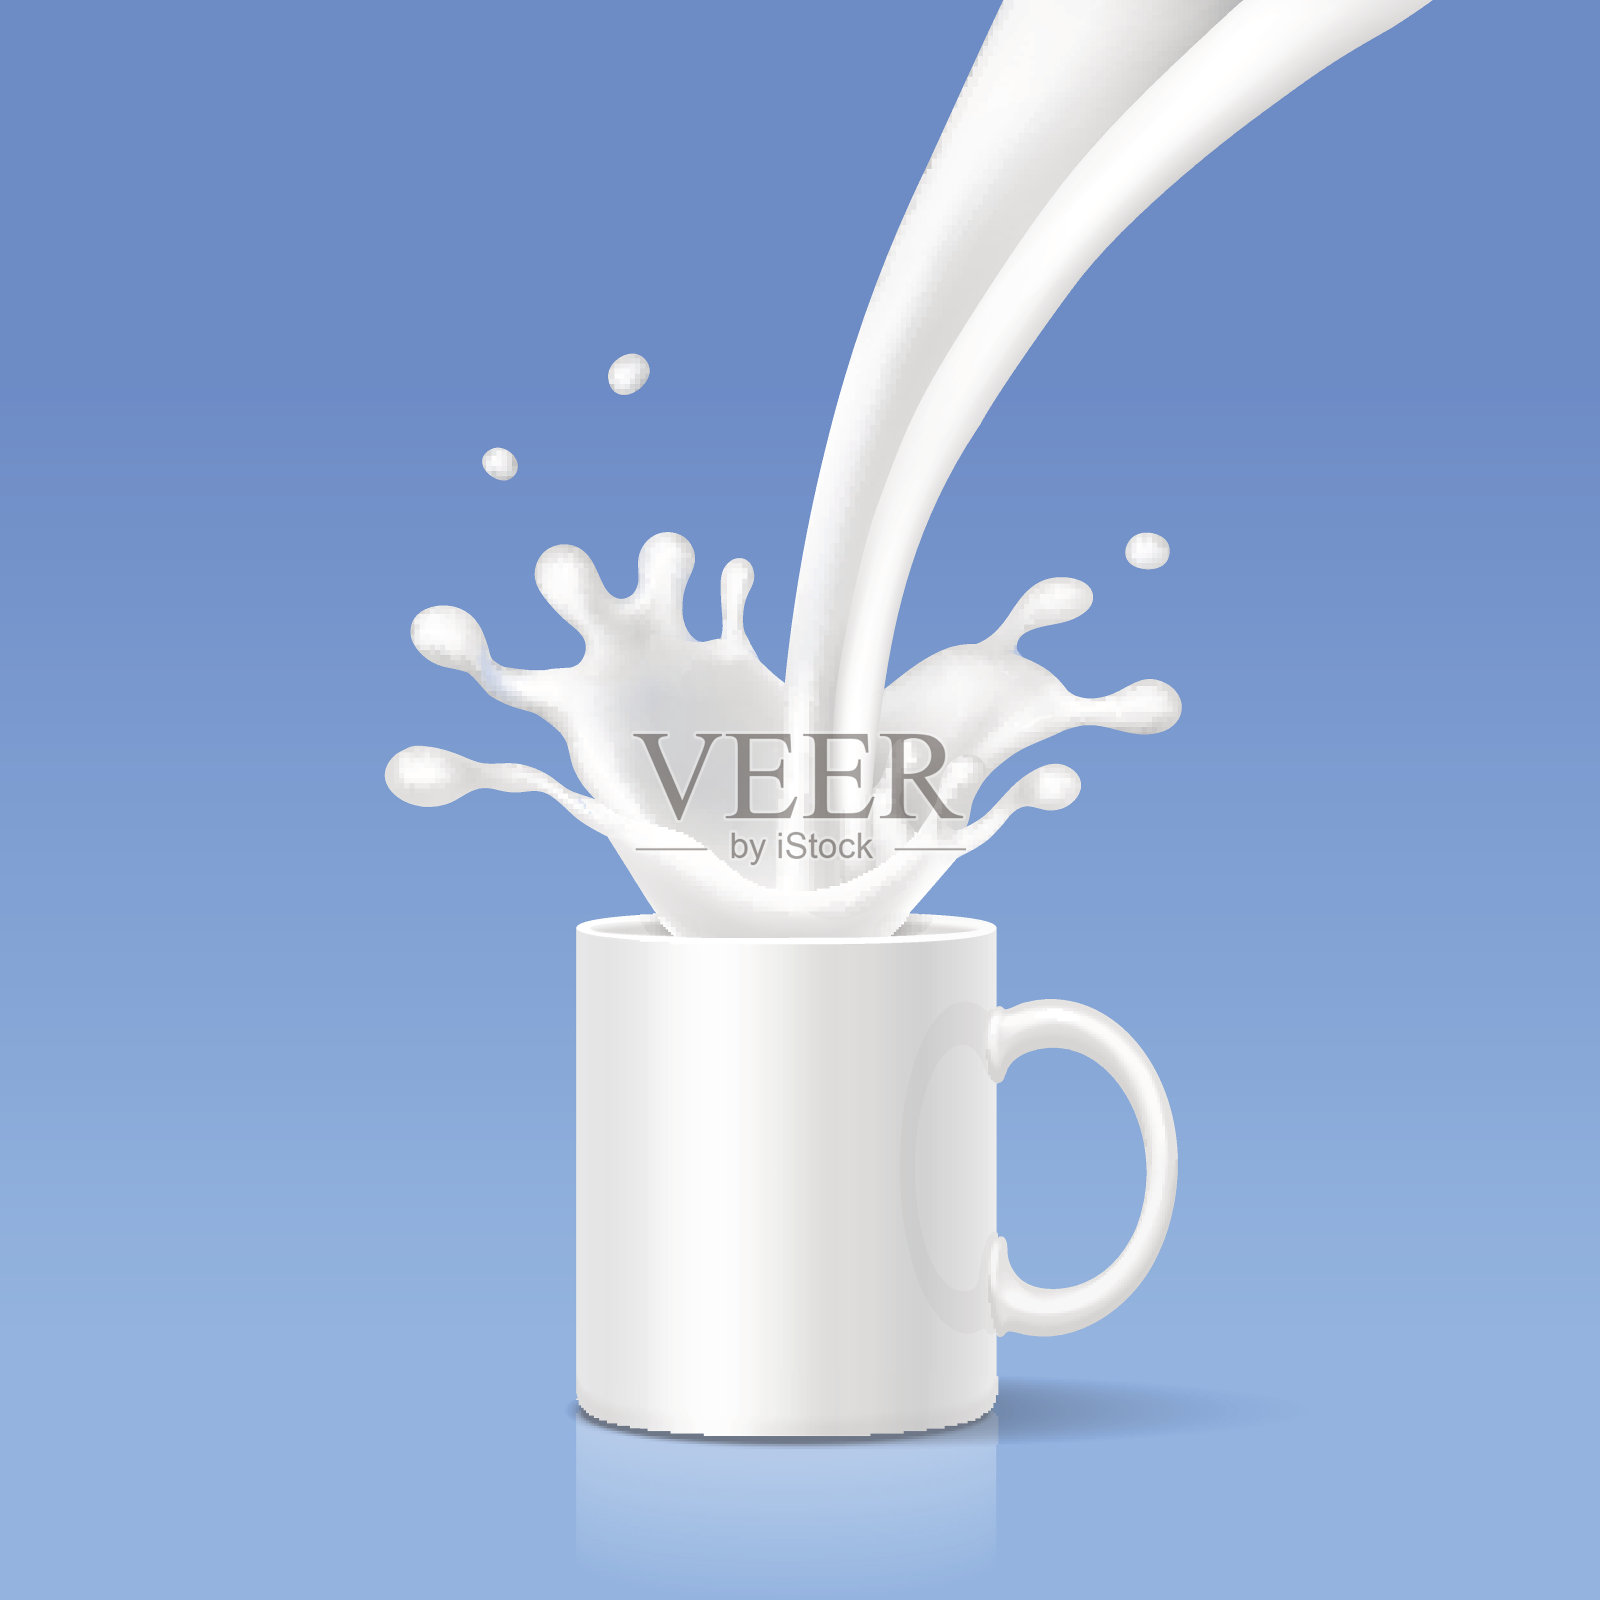 牛奶溅入一个白色的杯子里。现实的向量插画图片素材